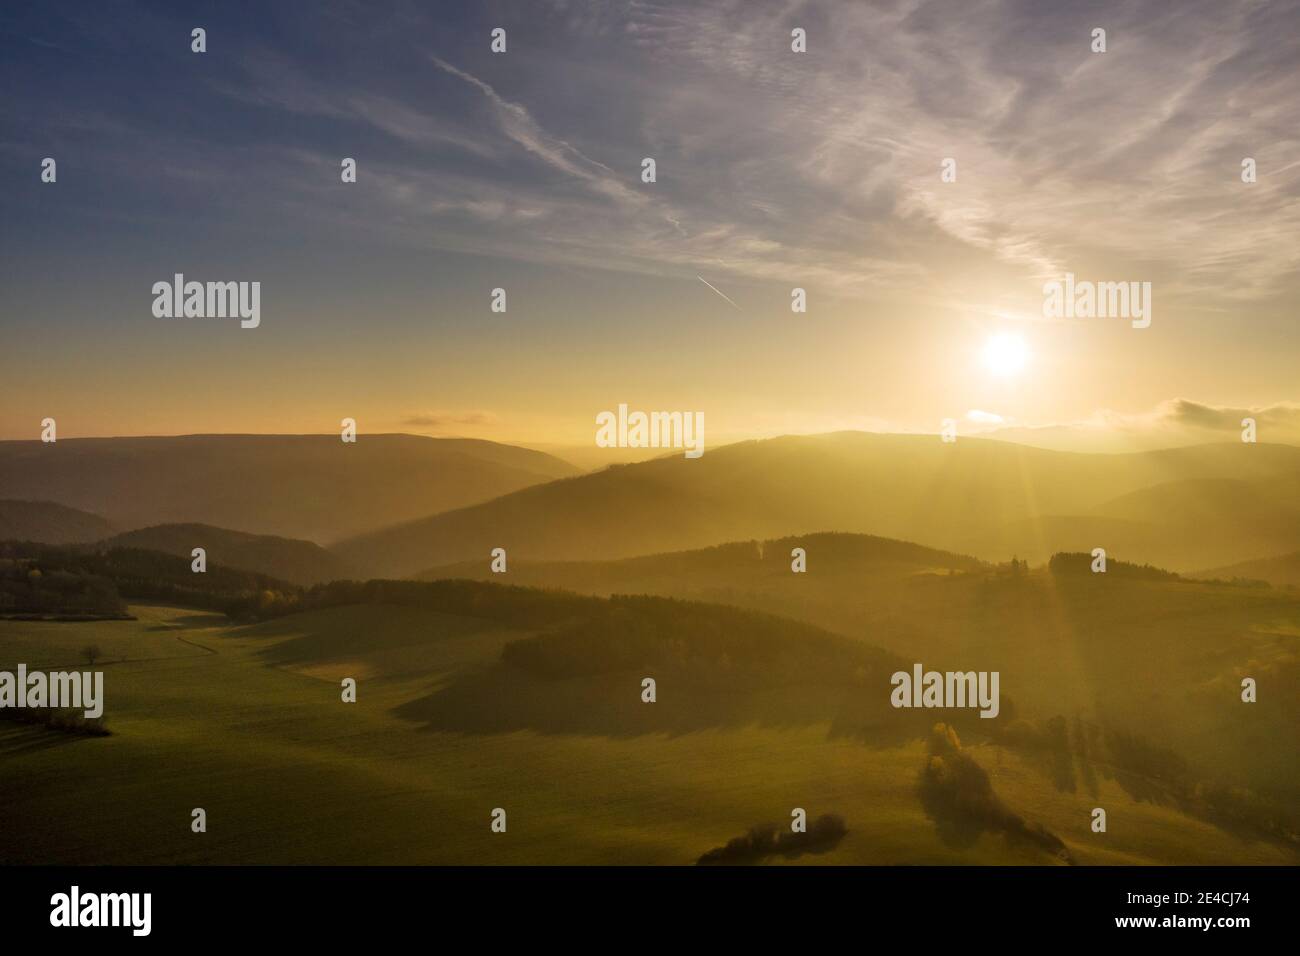 Germania, Turingia, Königsee, Oberhain, paesaggio, alba, montagne, silhouette di montagna, vista aerea, retroilluminazione Foto Stock